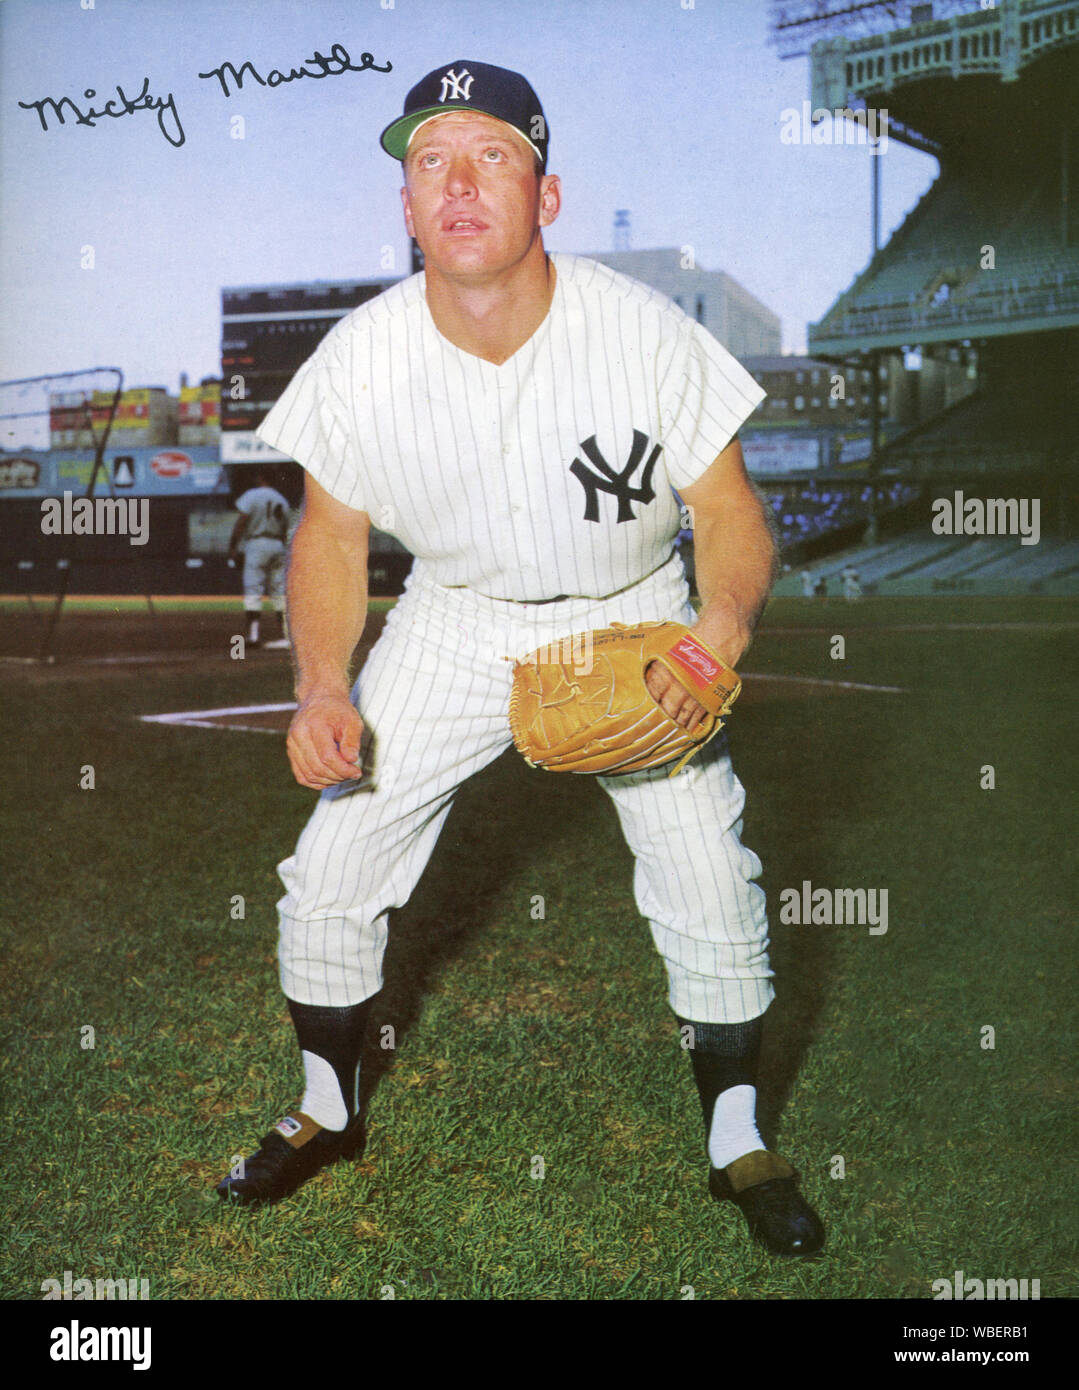 Plantea fotografía de Mickey Mantle el legendario jugador de béisbol Yankee de Nueva York en la década de los 50s y 60s. Foto de stock